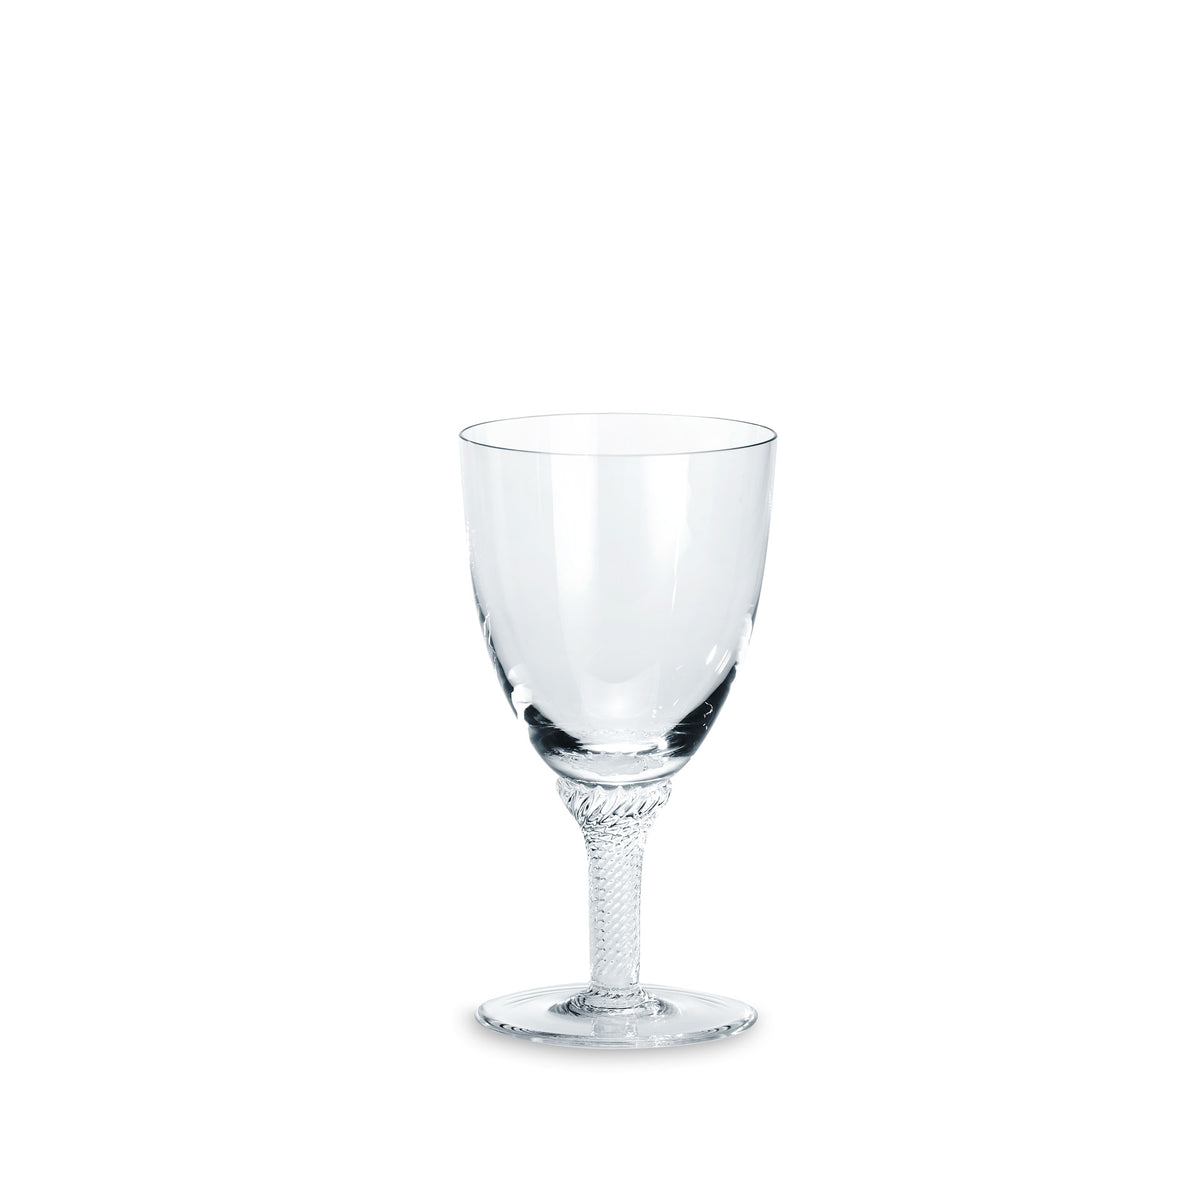 1044 Weißweinglas - ABVERKAUF - 50% REDUZIERT